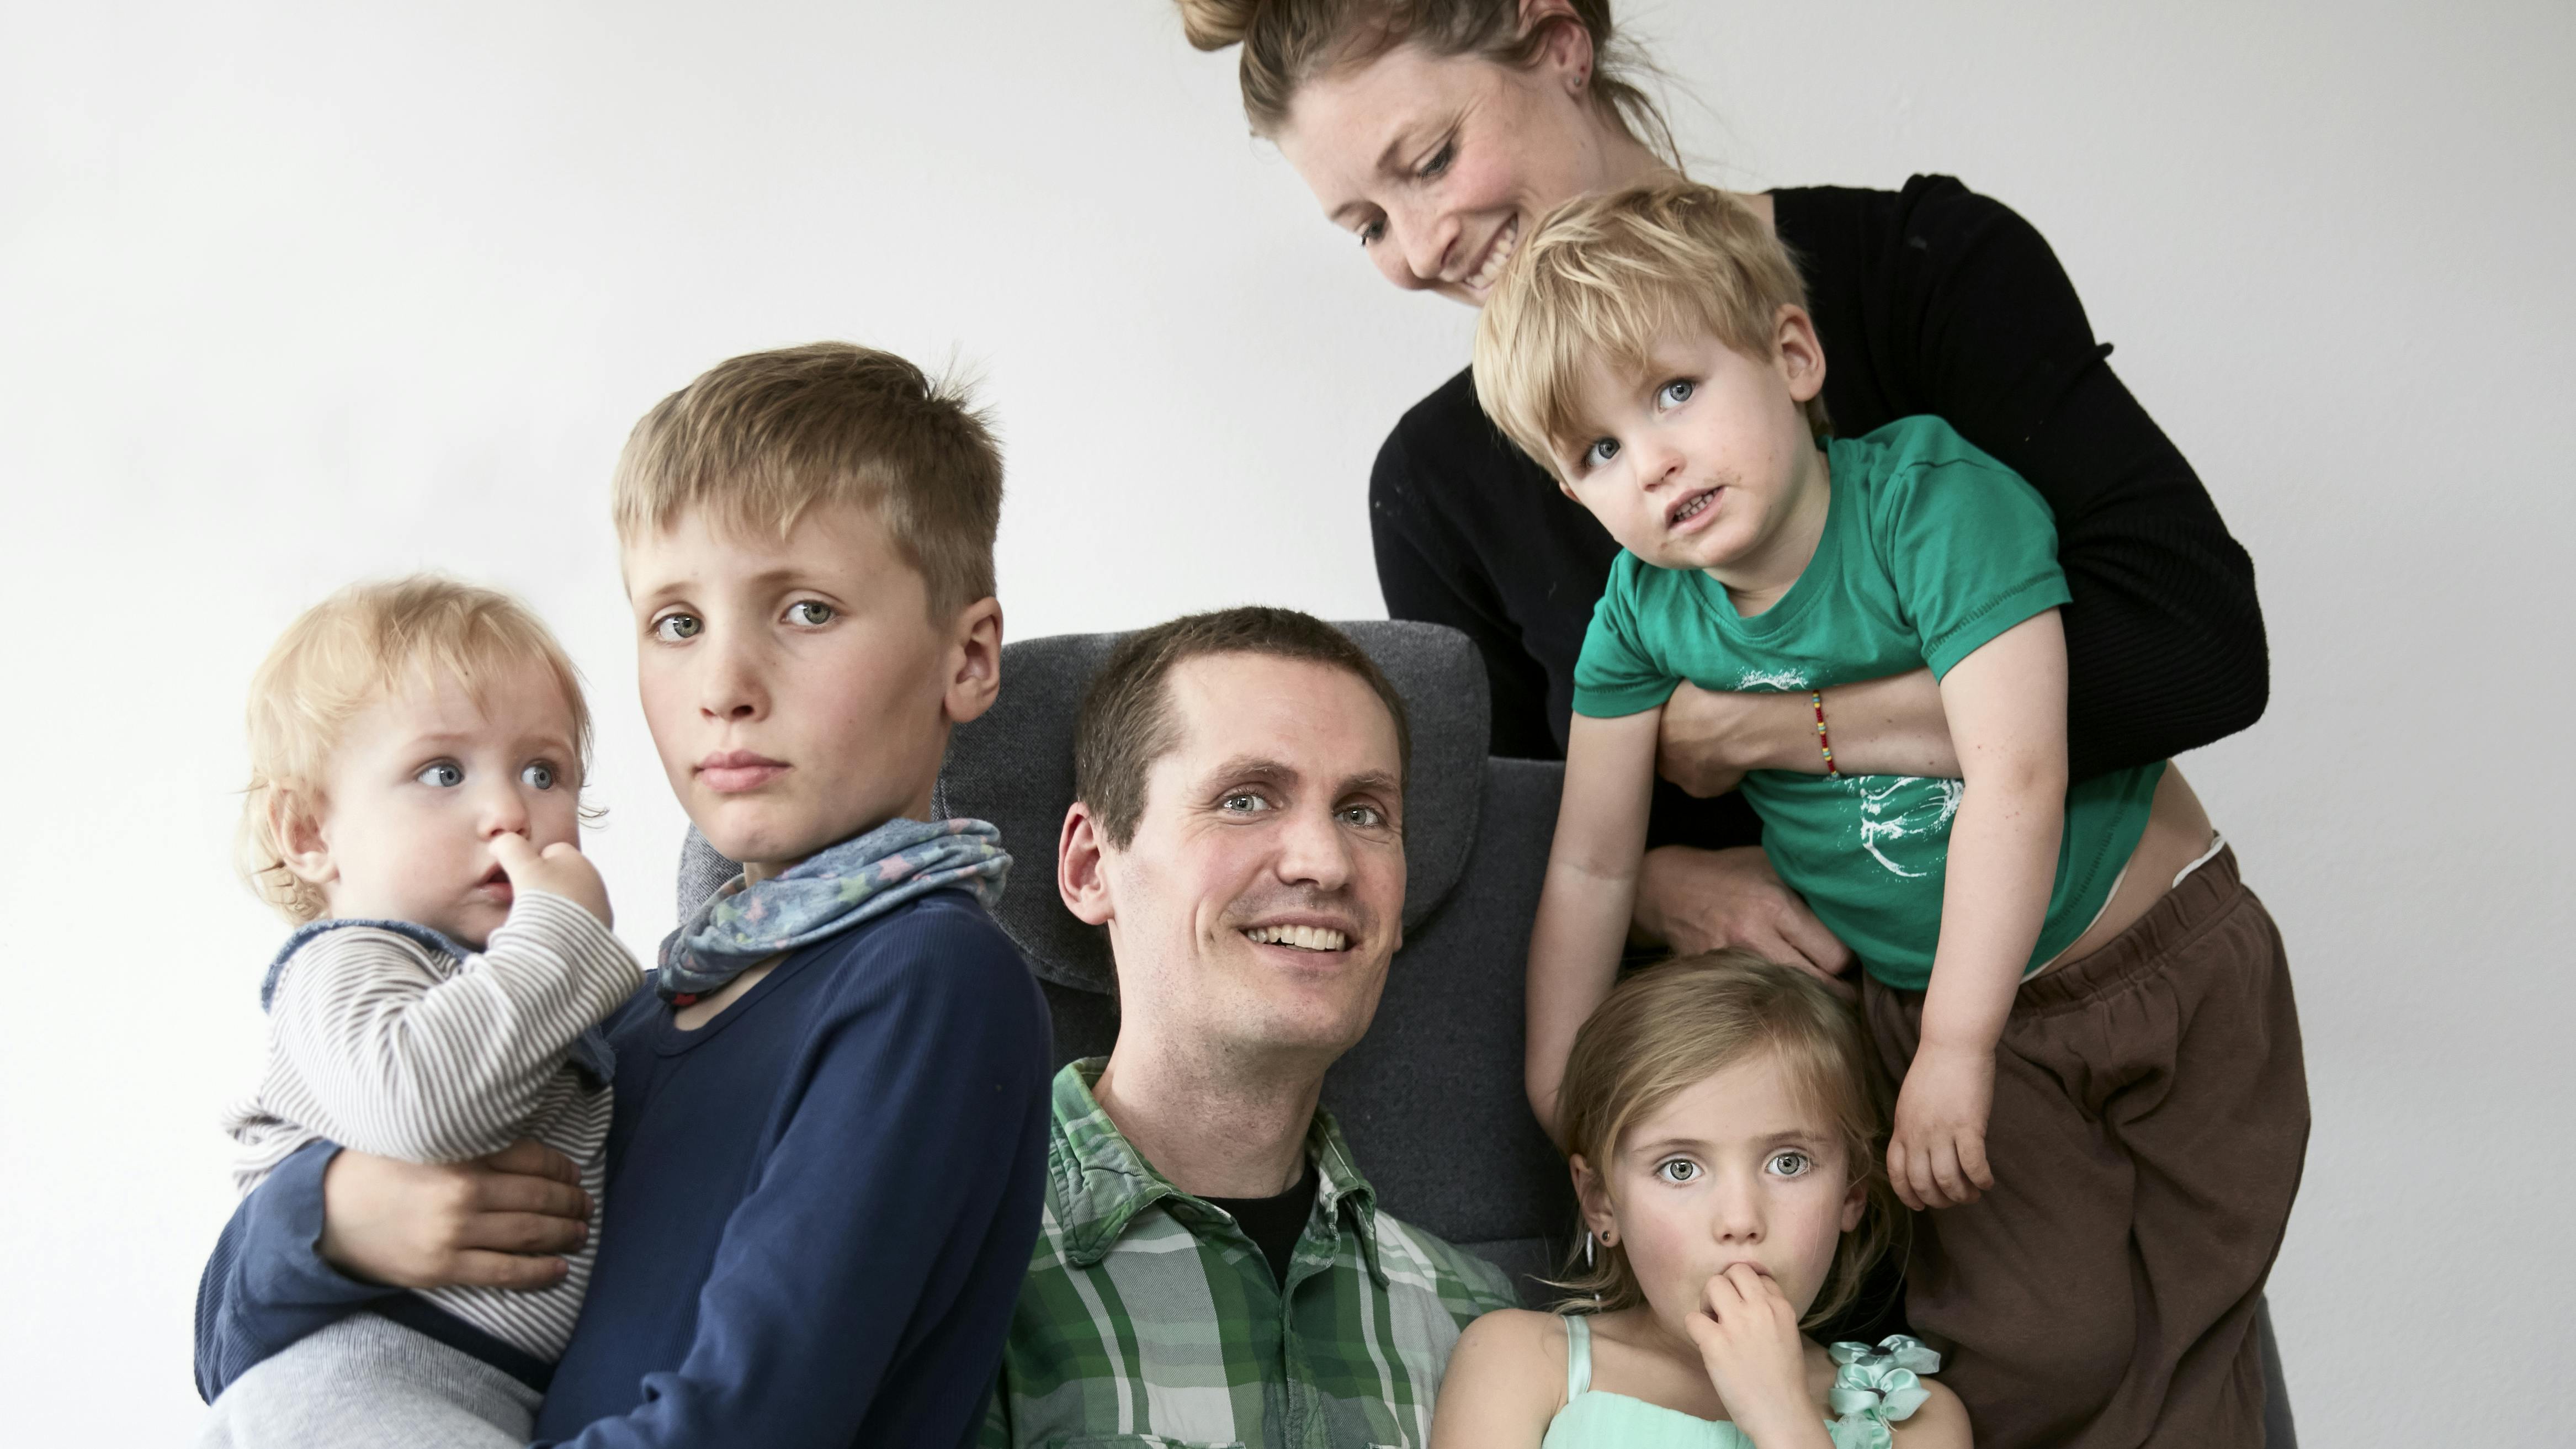 Lasse Lüders lider af sygdommen ALS, her ses han med hele familien